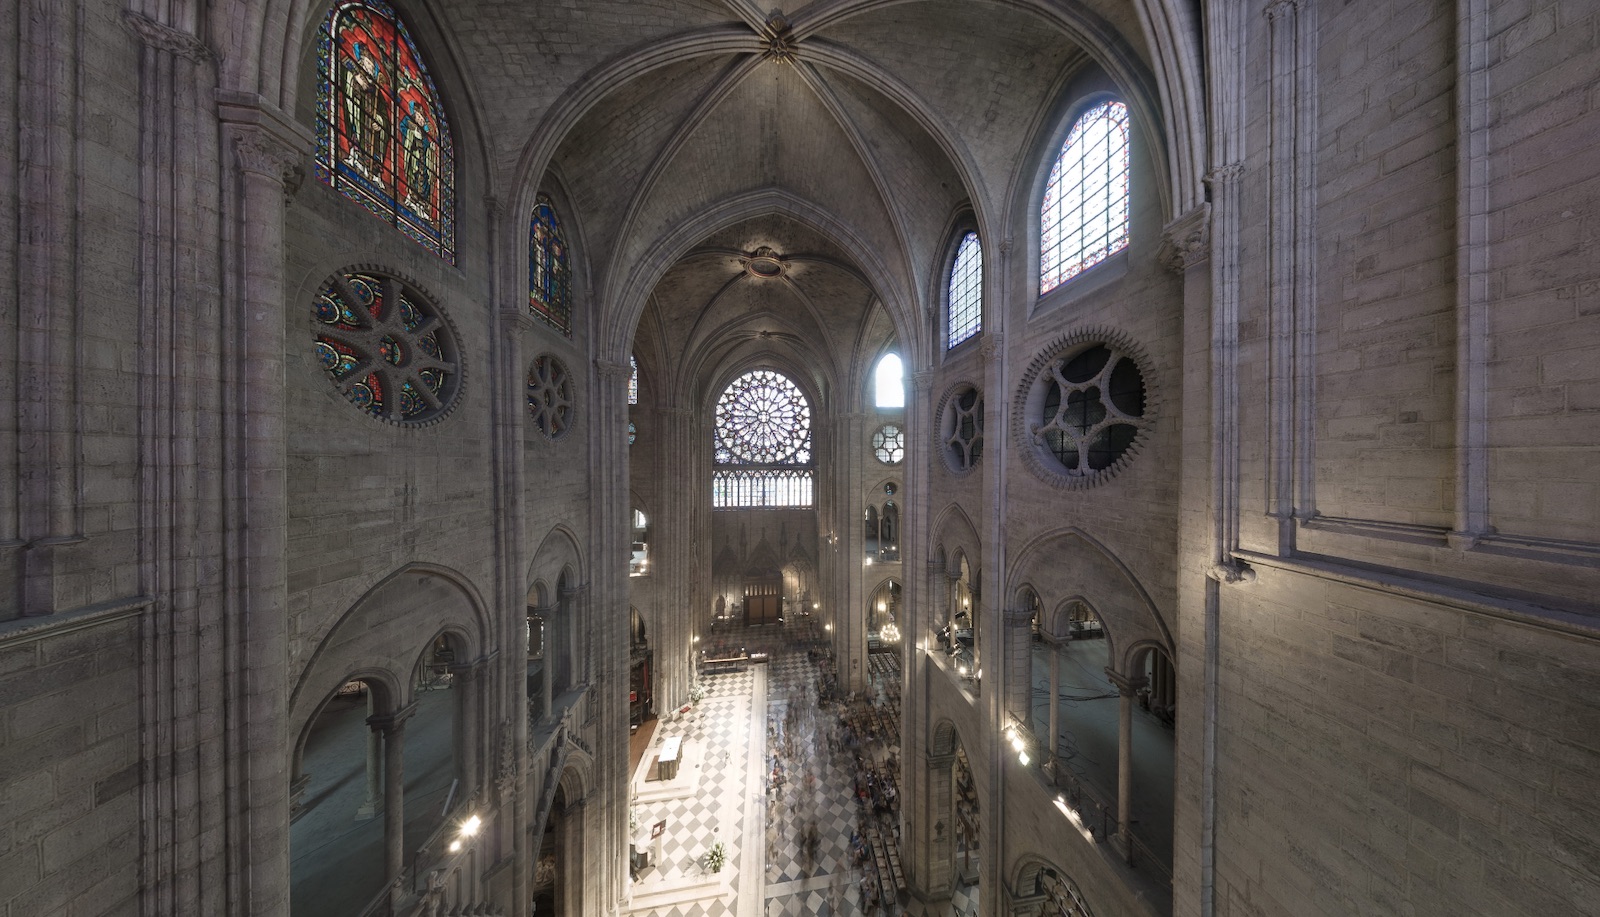 Le nuage de points révèle la structure et les secrets de fabrication de la cathédrale. © Andrew Tallon